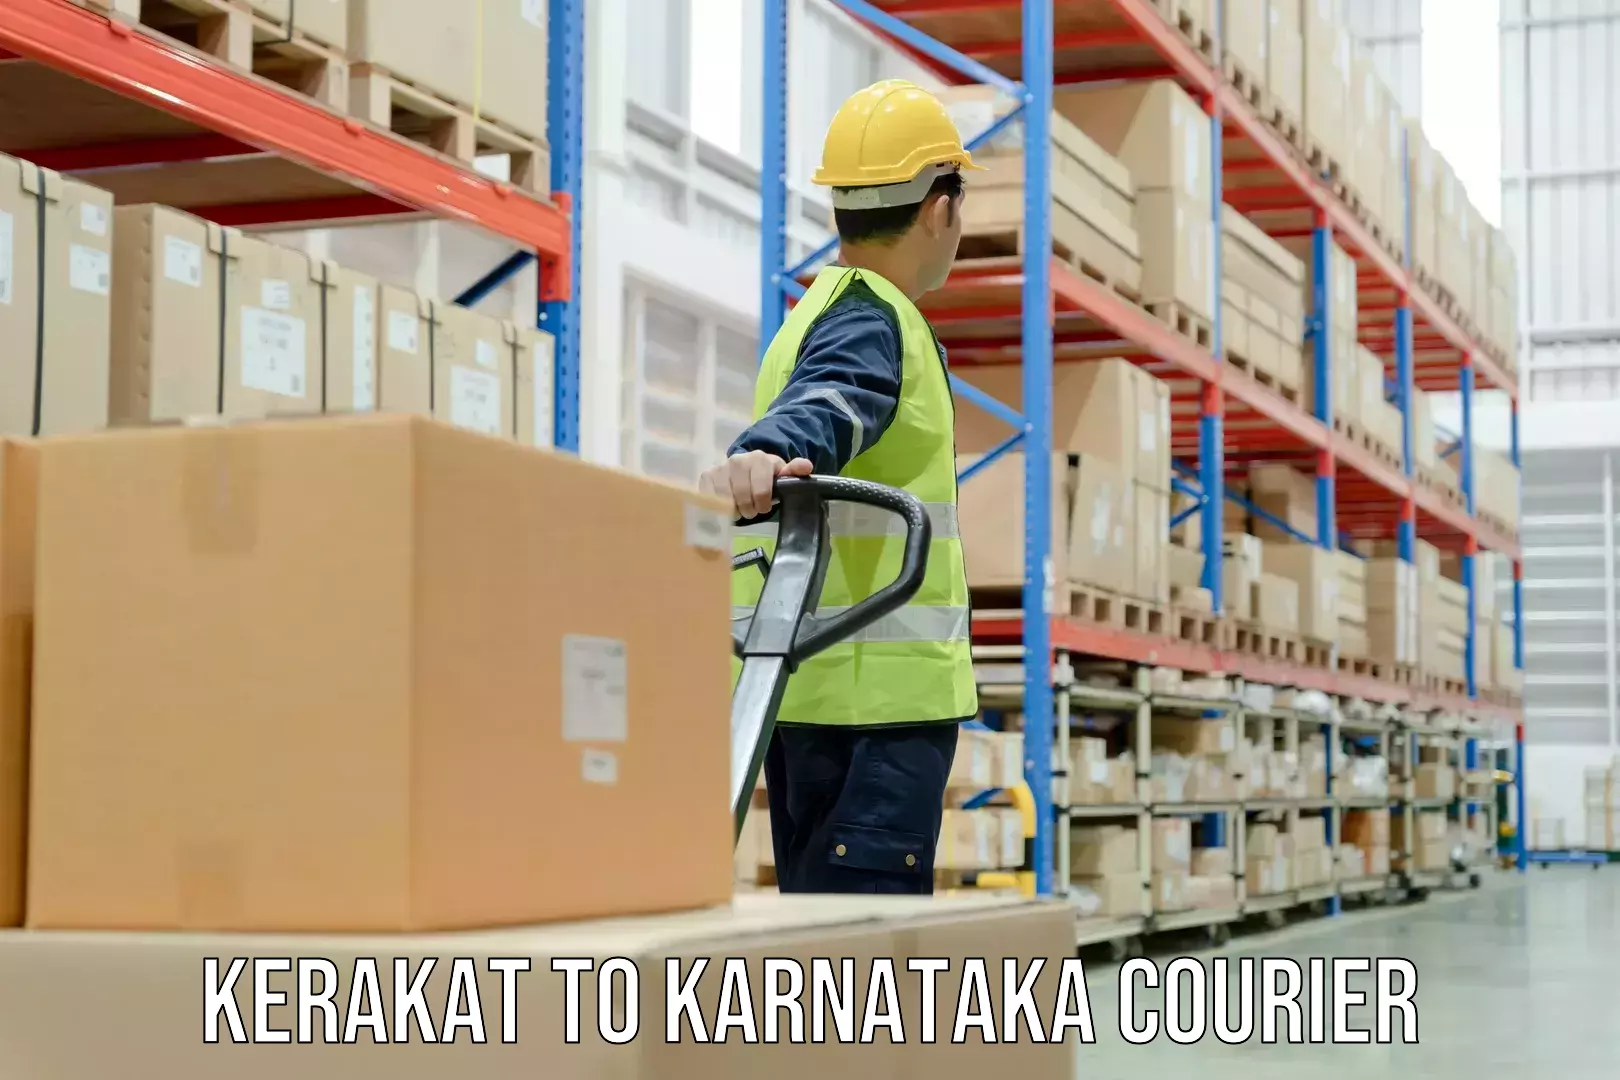 Customer-centric shipping Kerakat to Basavanagudi